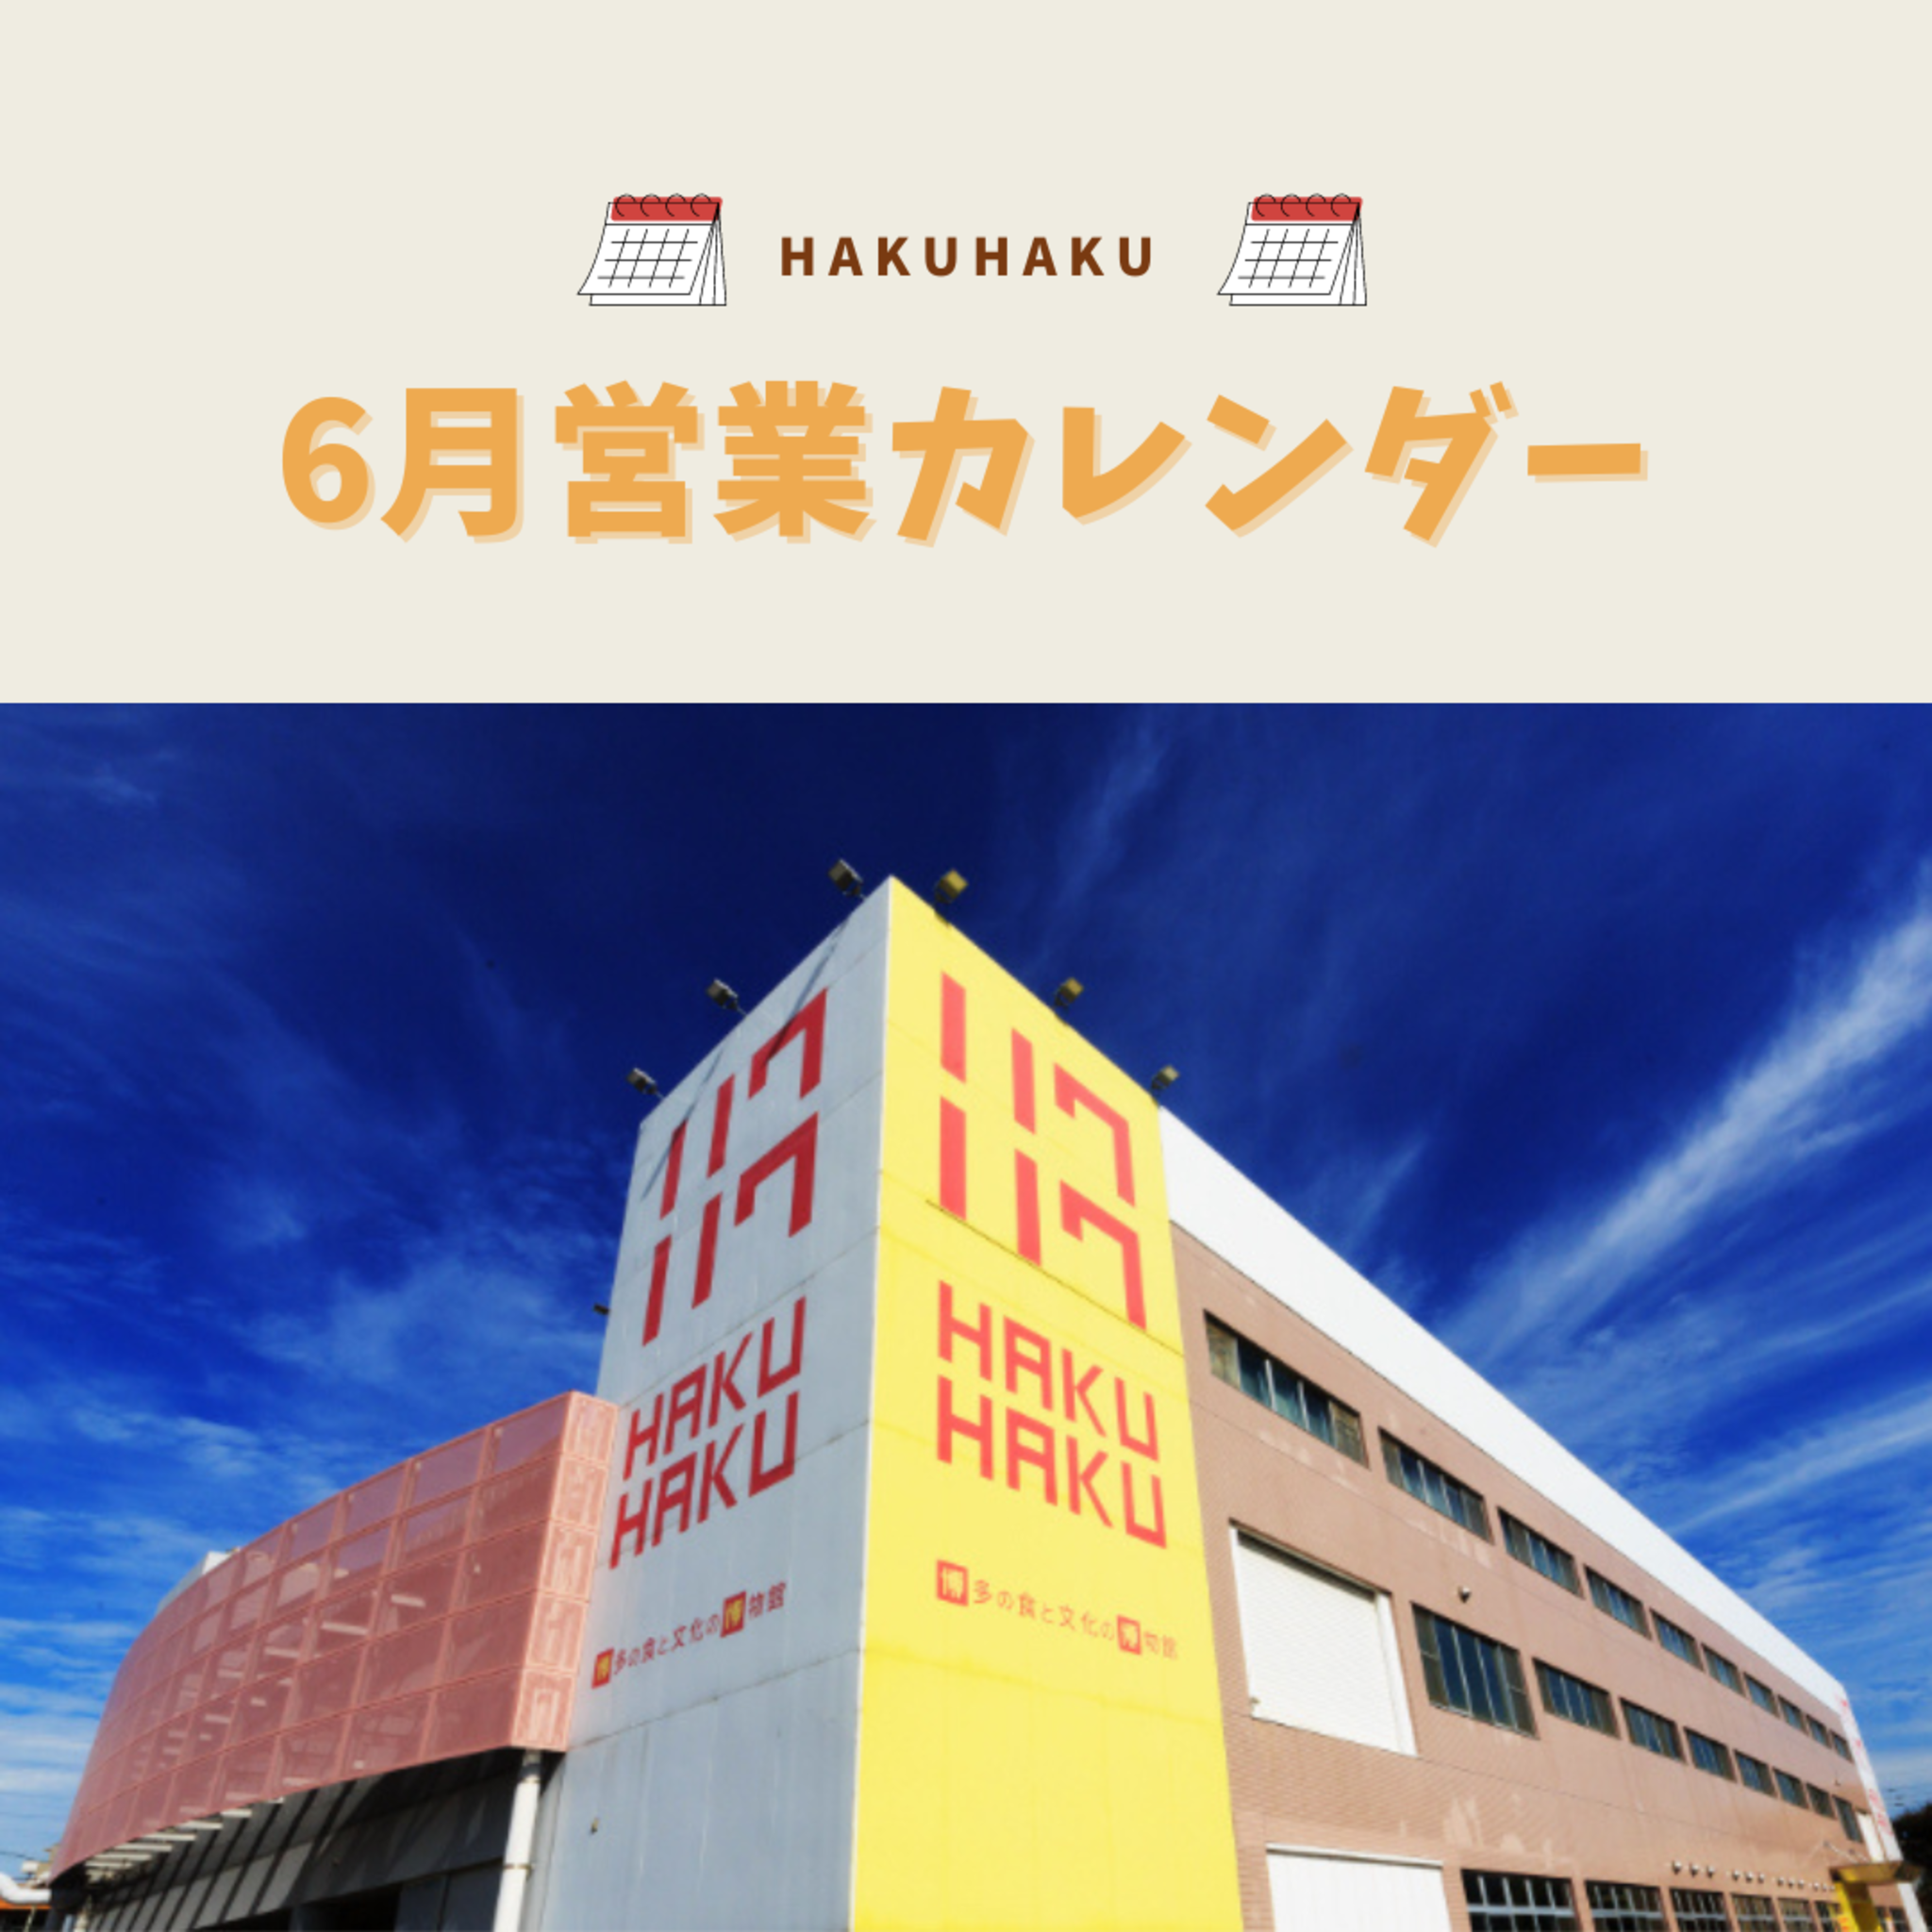 博多の食と文化の博物館ハクハクからのお知らせ(6月営業カレンダー更新)に関する写真